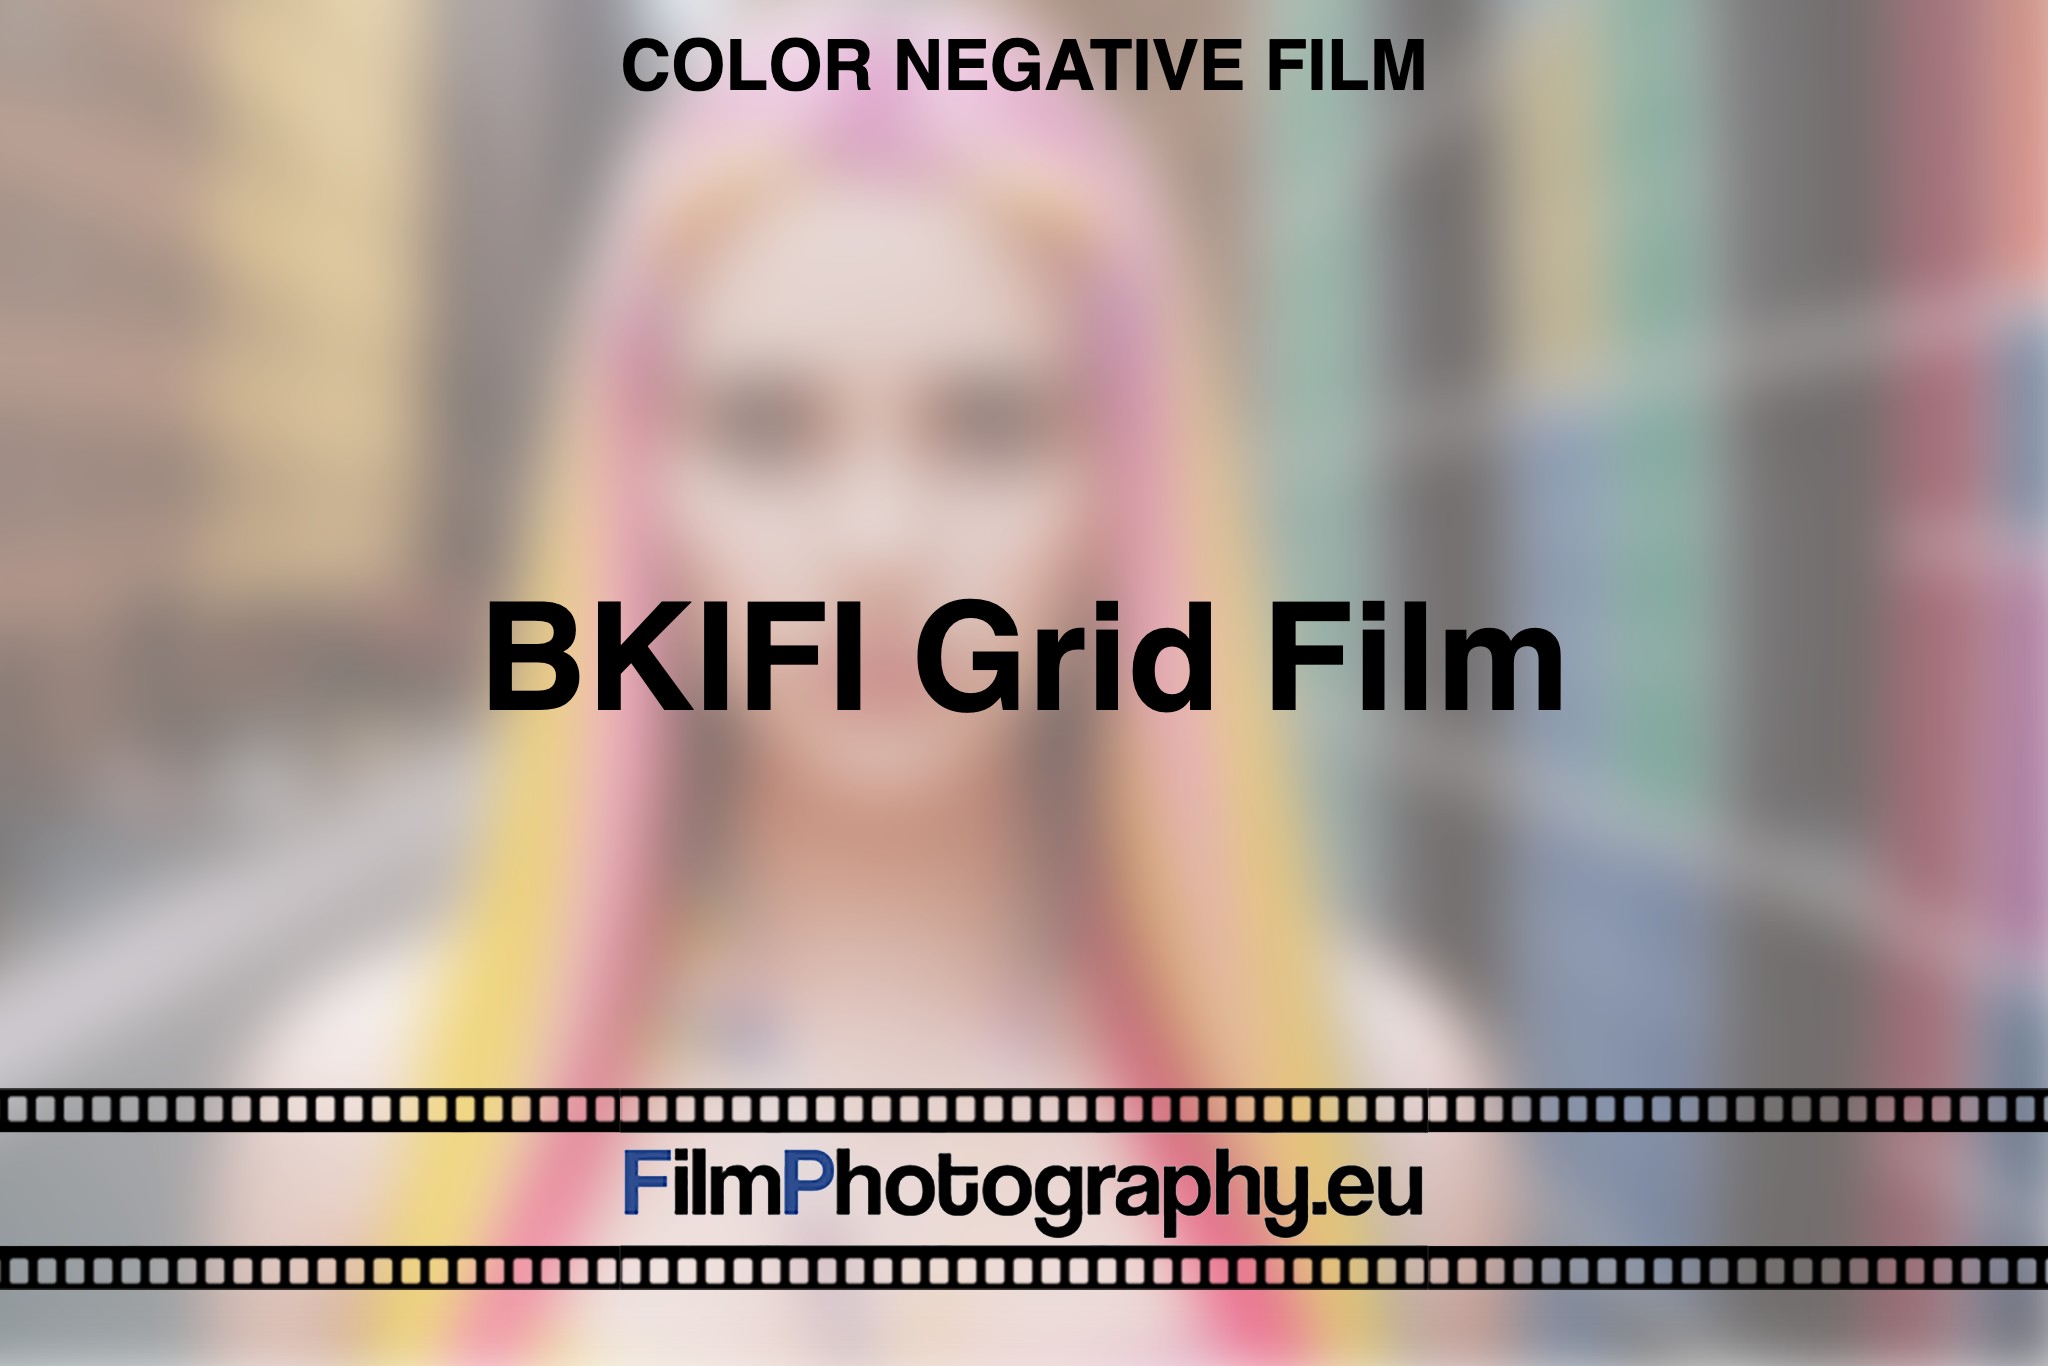 BKIFI-Grid-Film-Color-negative-film-bnv